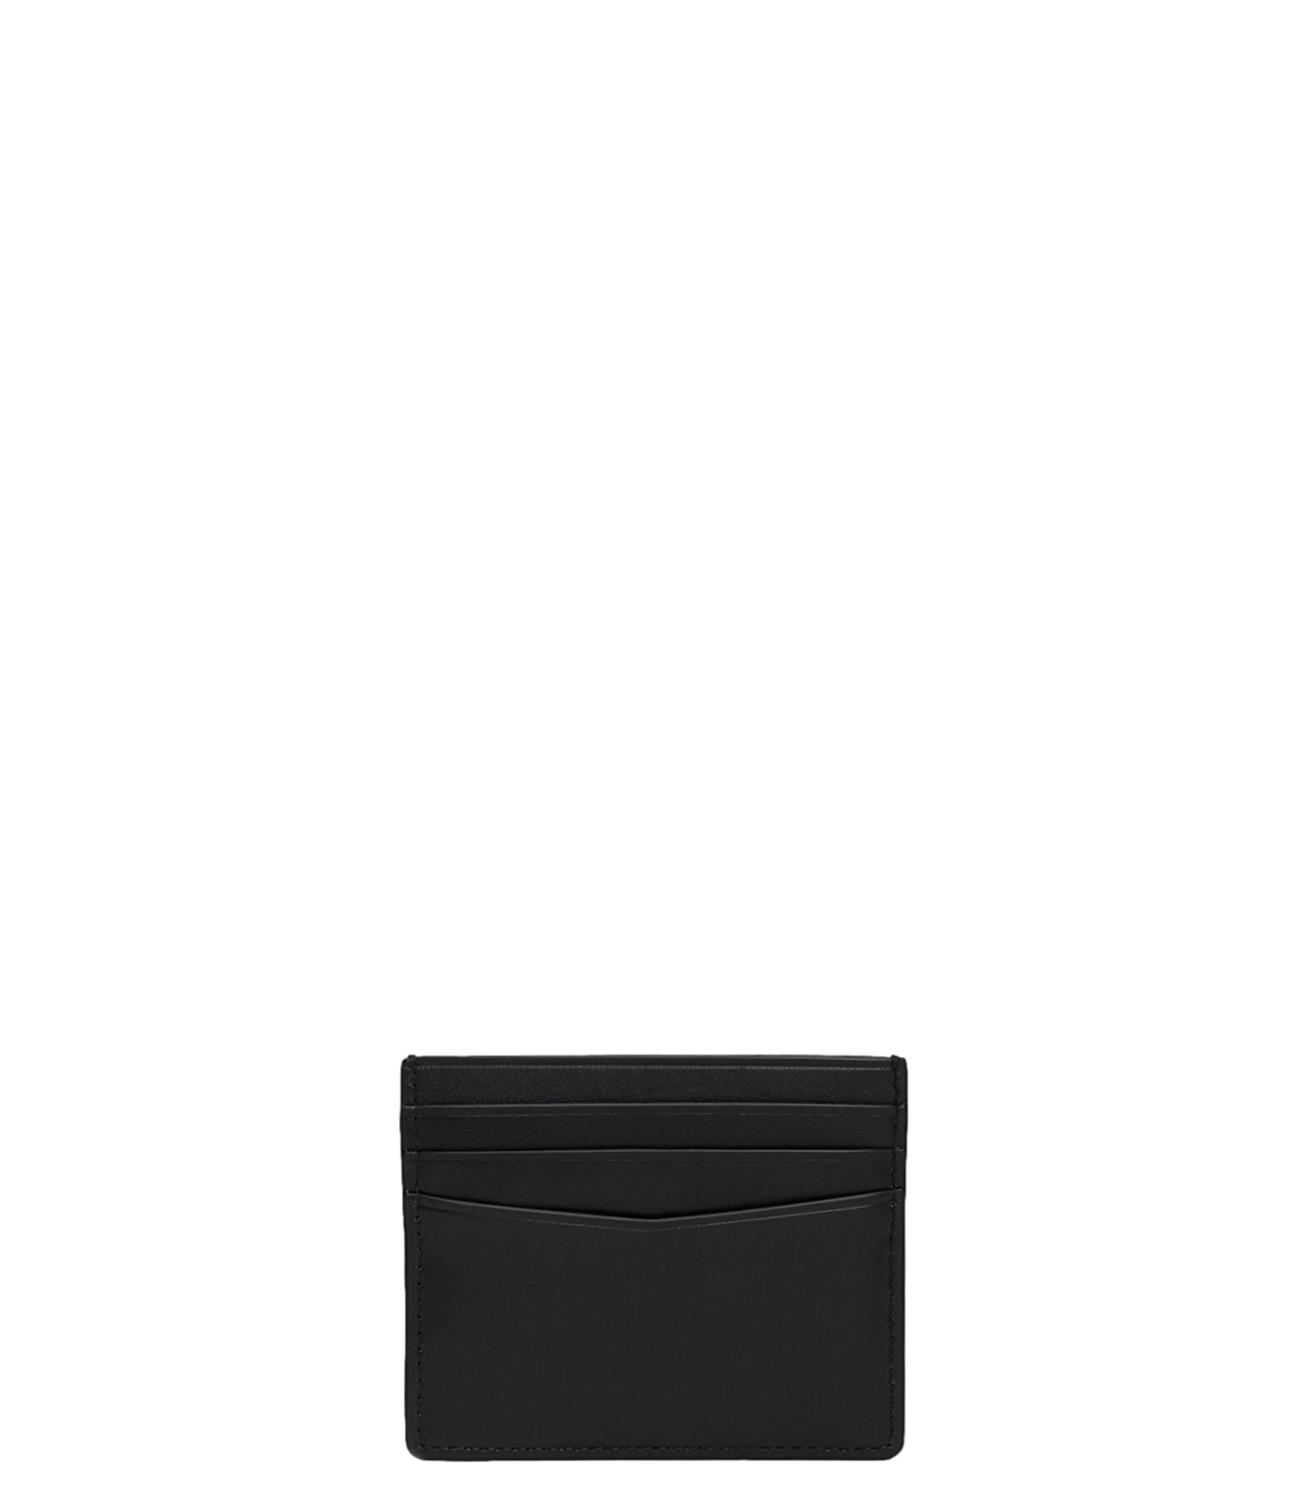 Portacarte Calvin Klein nero con logo cK